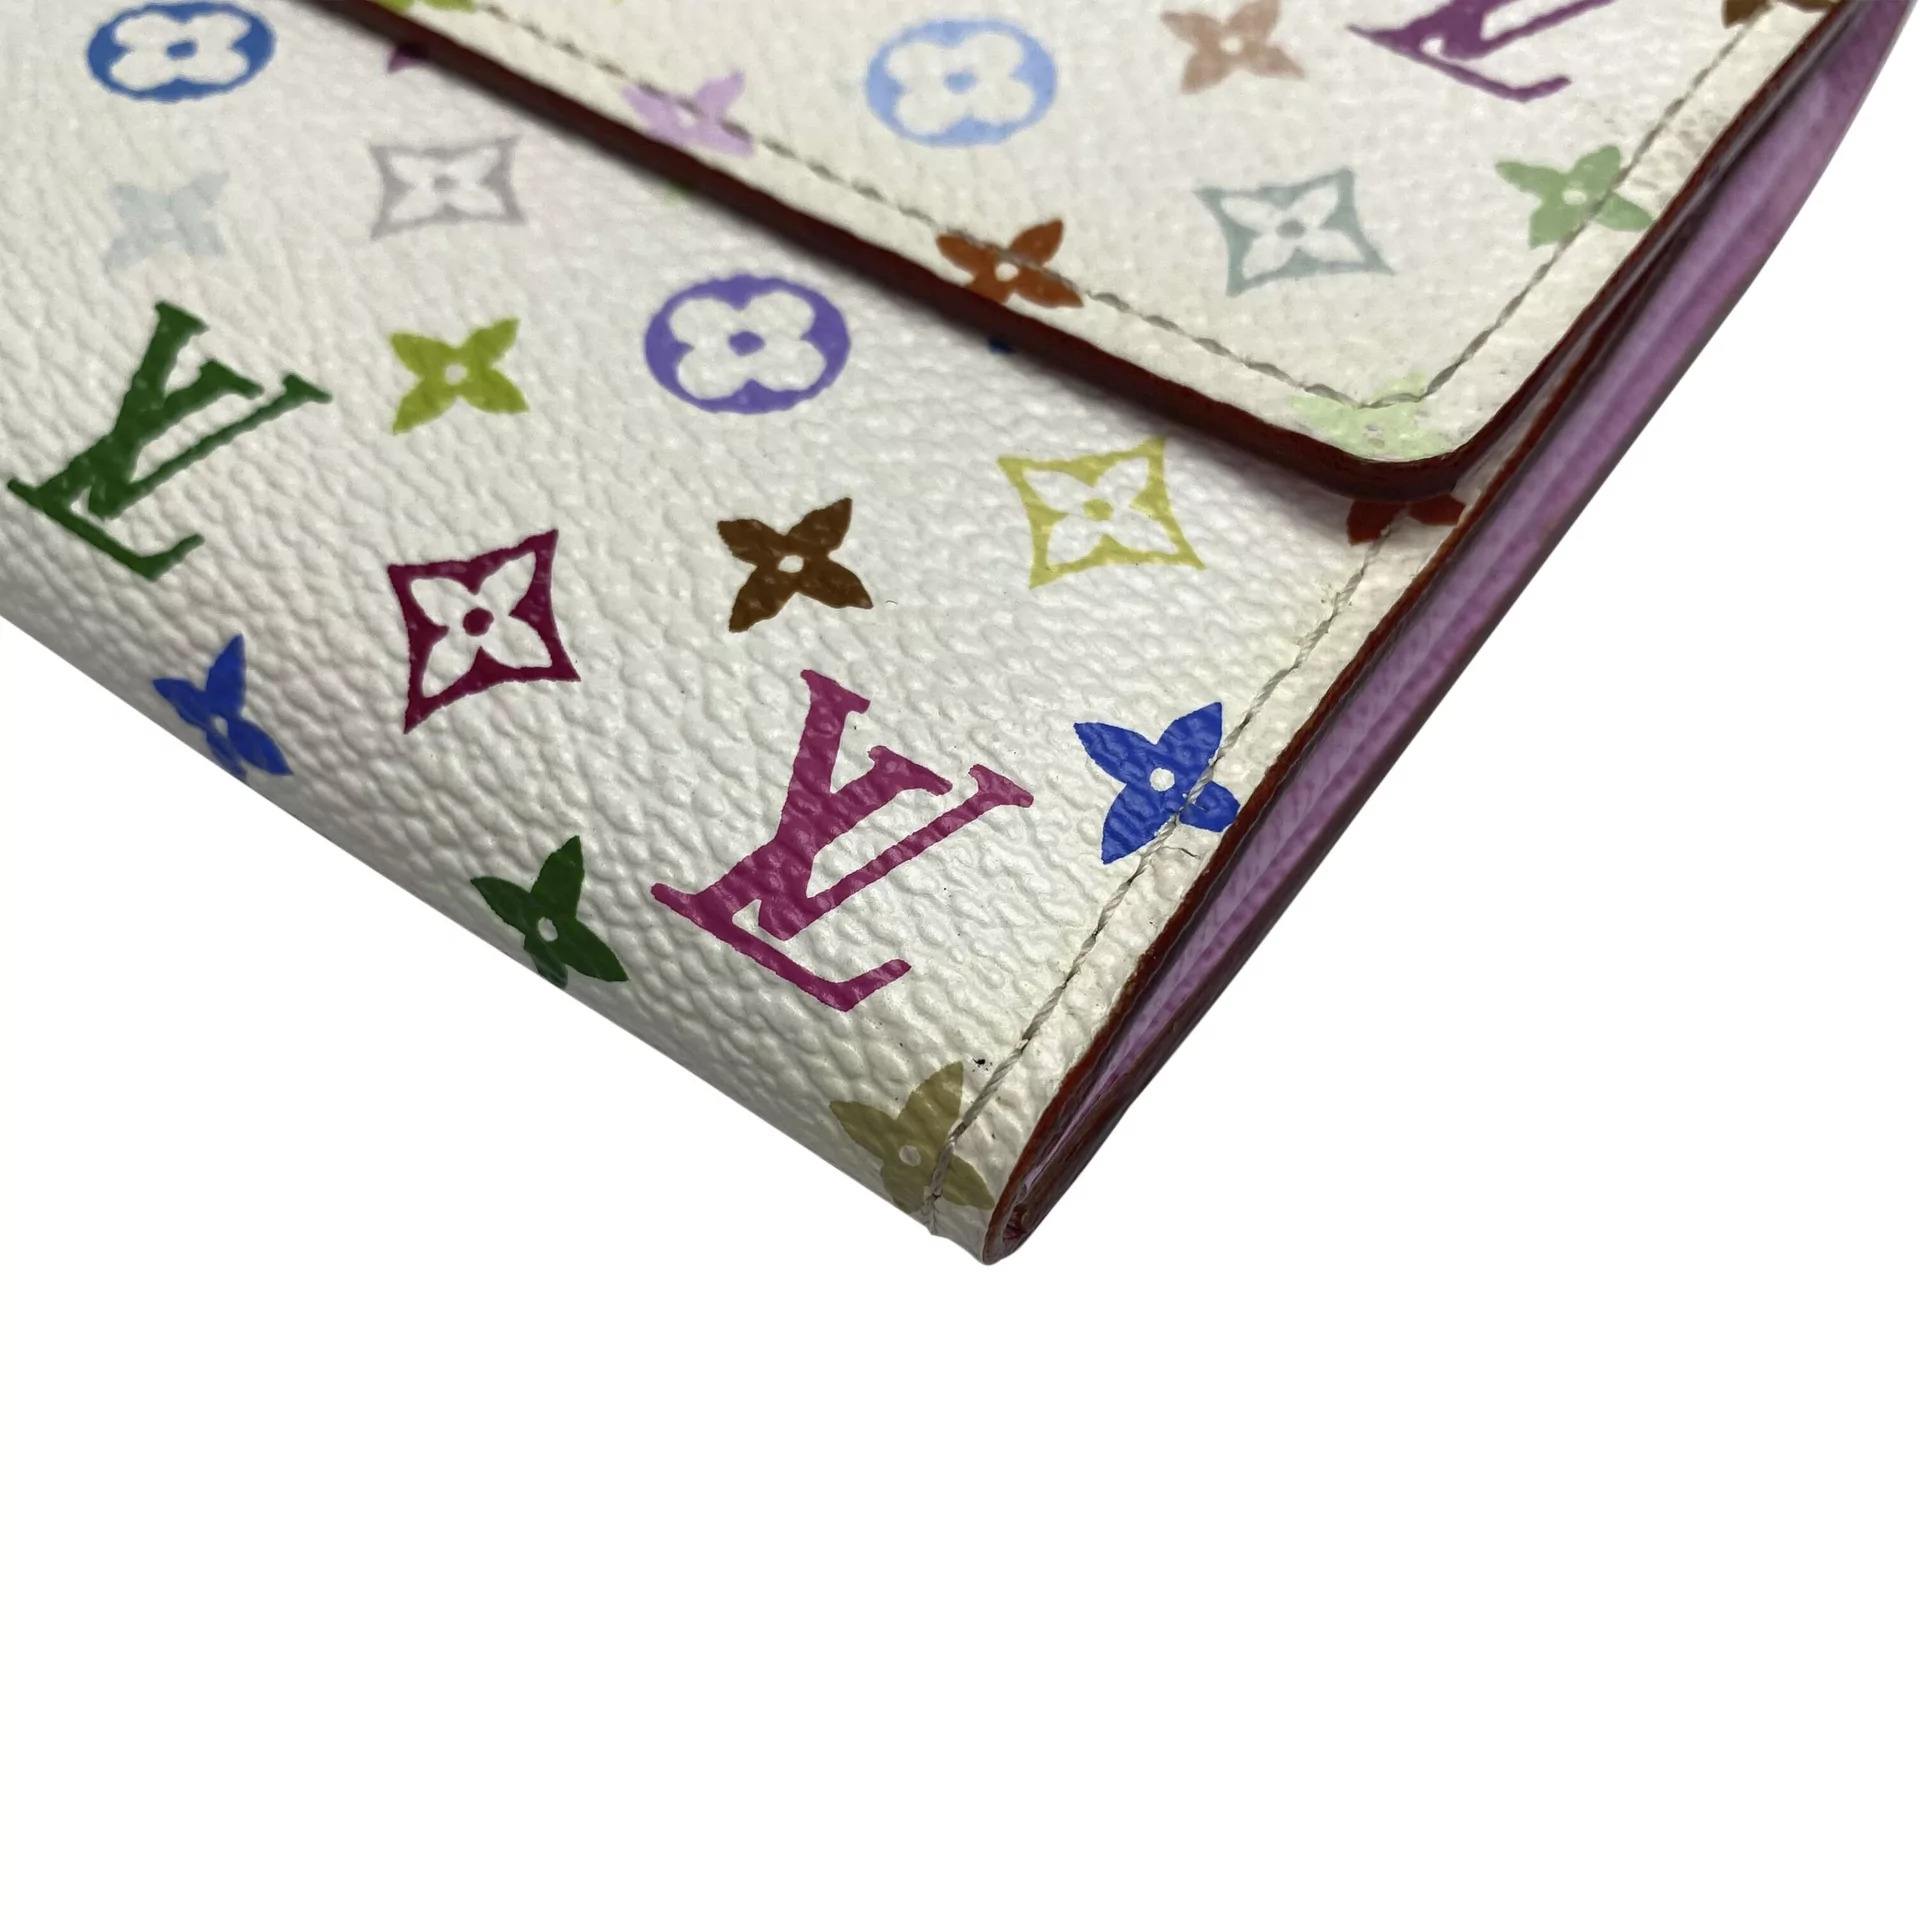 Sarah cloth wallet Louis Vuitton Brown in Cloth - 30664223